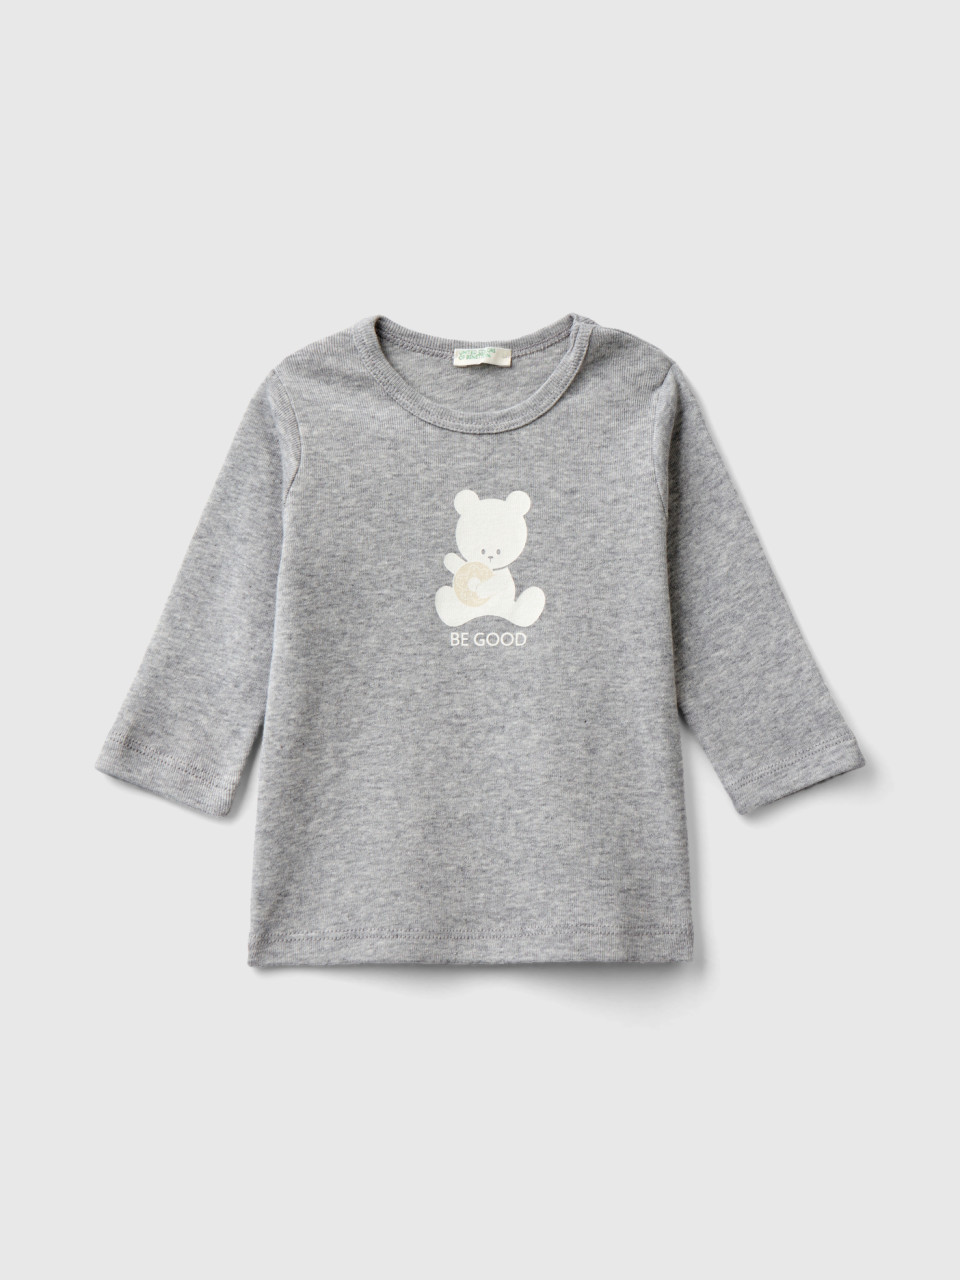 Benetton, Long Sleeve 100% Organic Cotton T-shirt, Light Gray, Kids